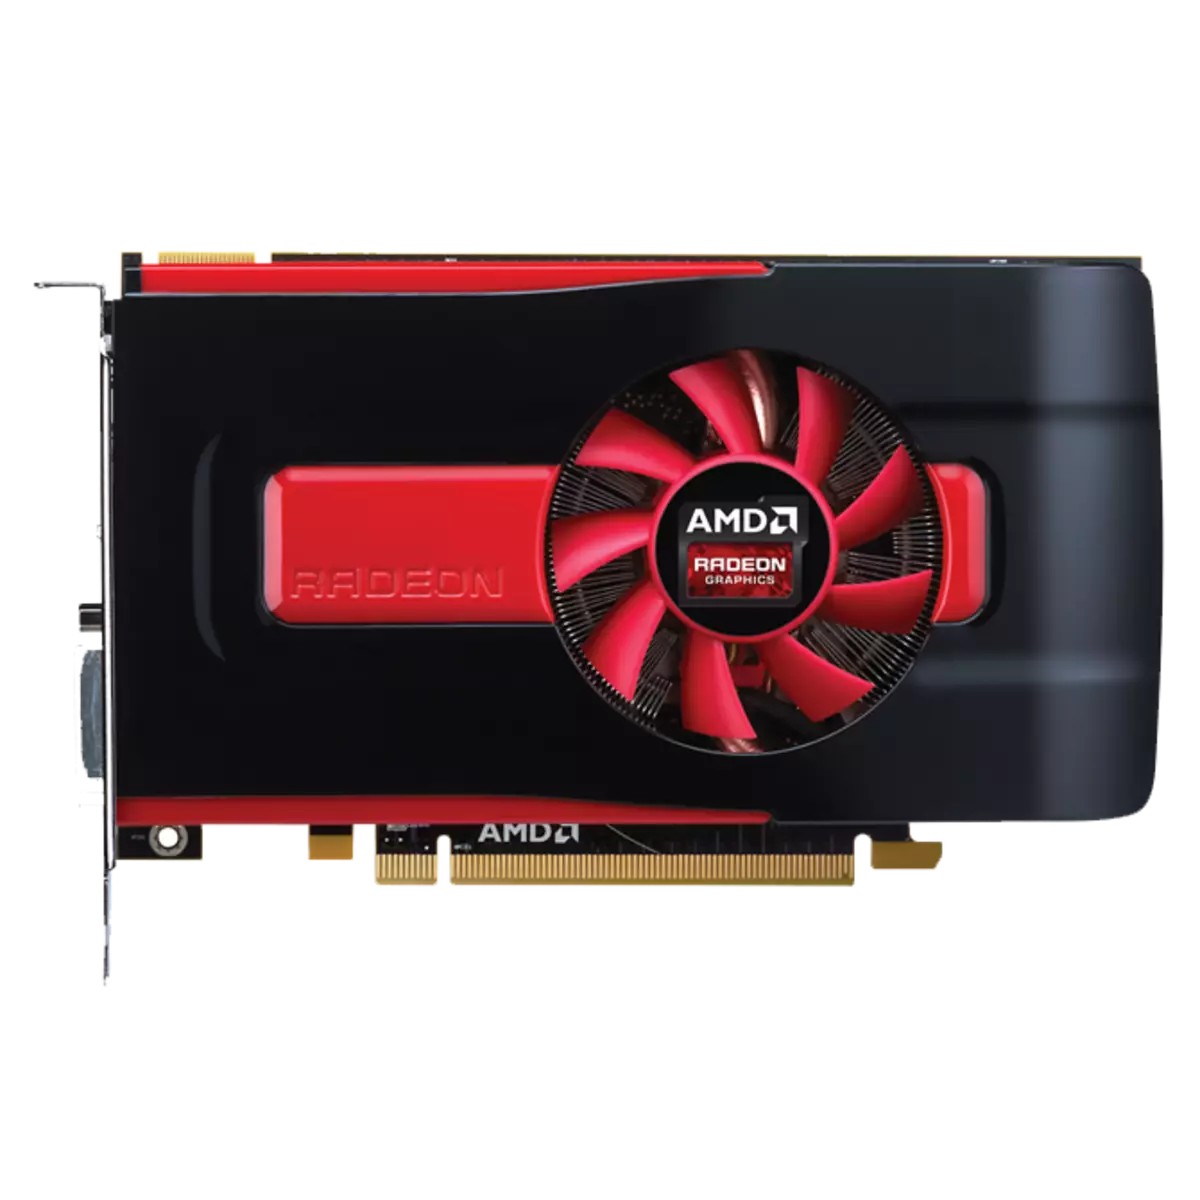 下载AMD Radeon HD 7700系列驱动程序